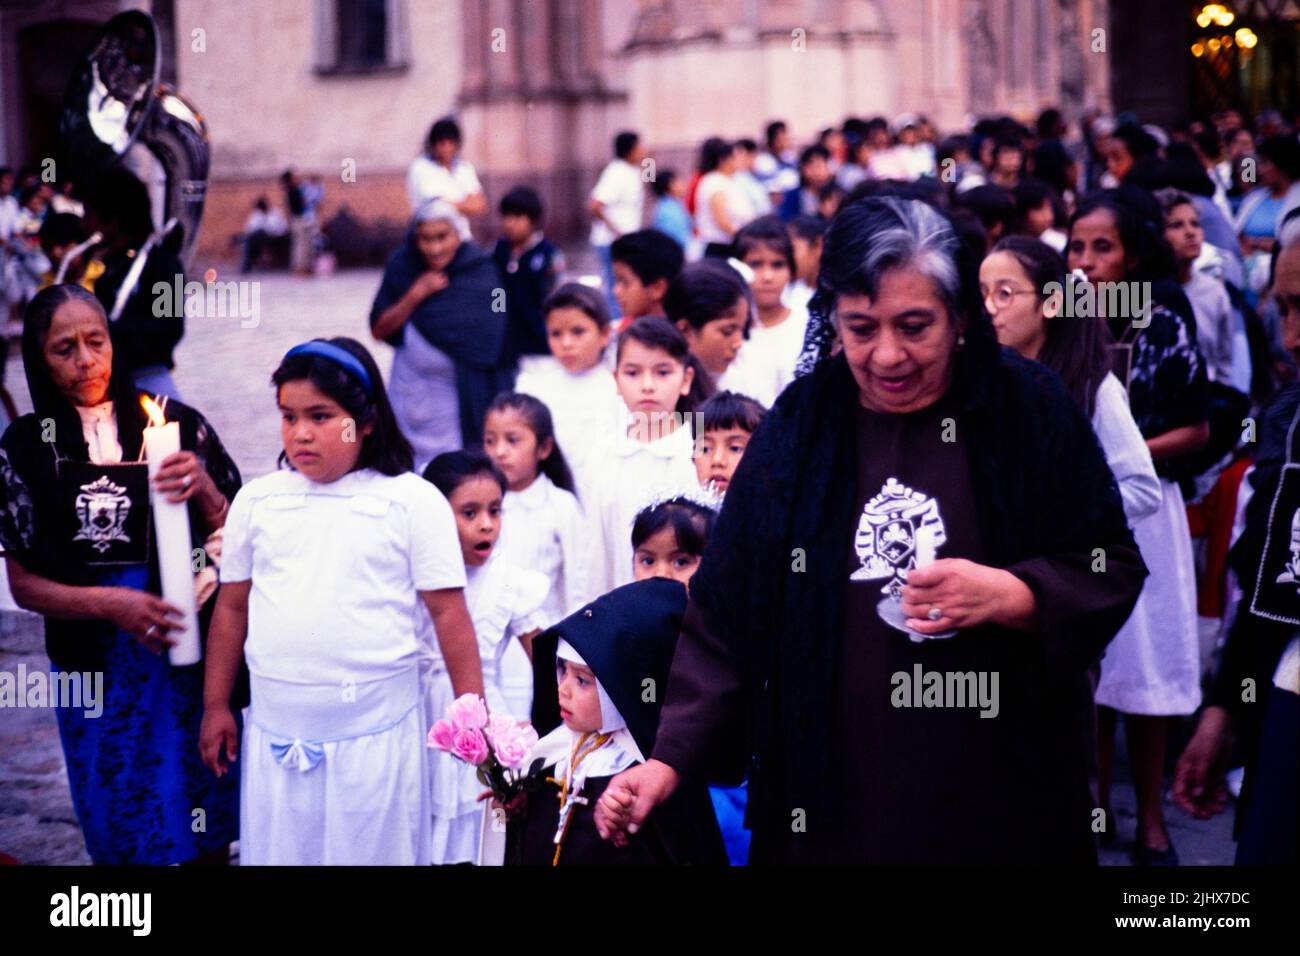 Candlelit religious procession La Parroquia church, San Migeul de Allende, Mexico c 1990 Stock Photo